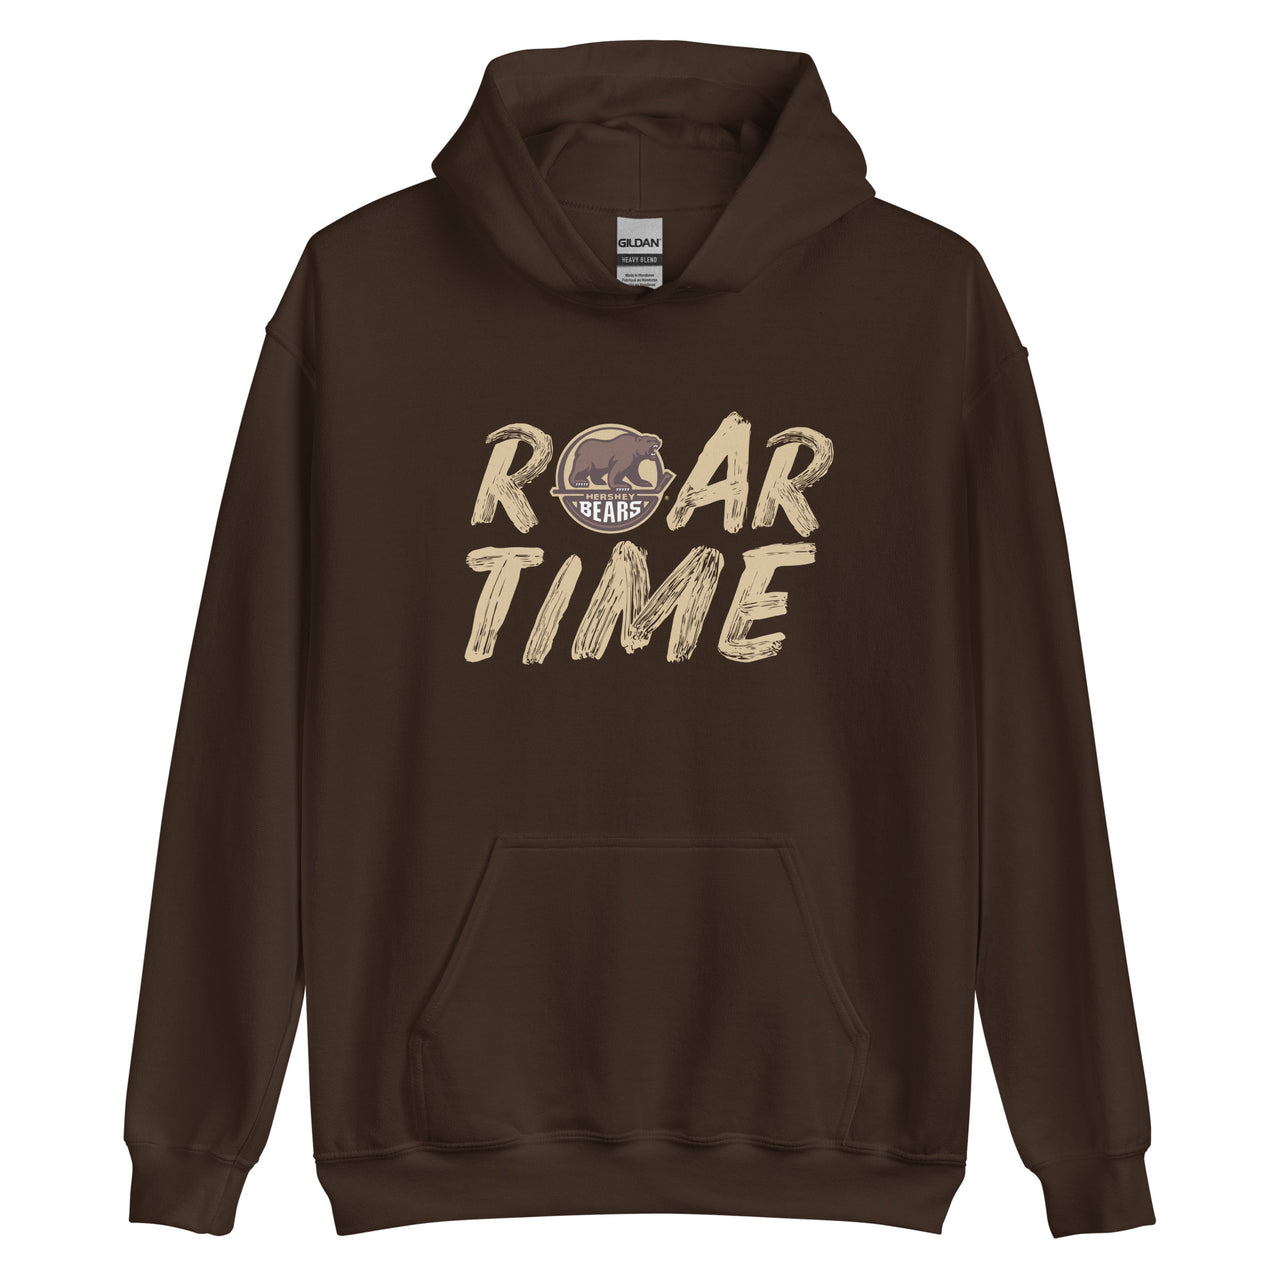 Hershey Bears "Roar Time" Adult Pullover Hoodie